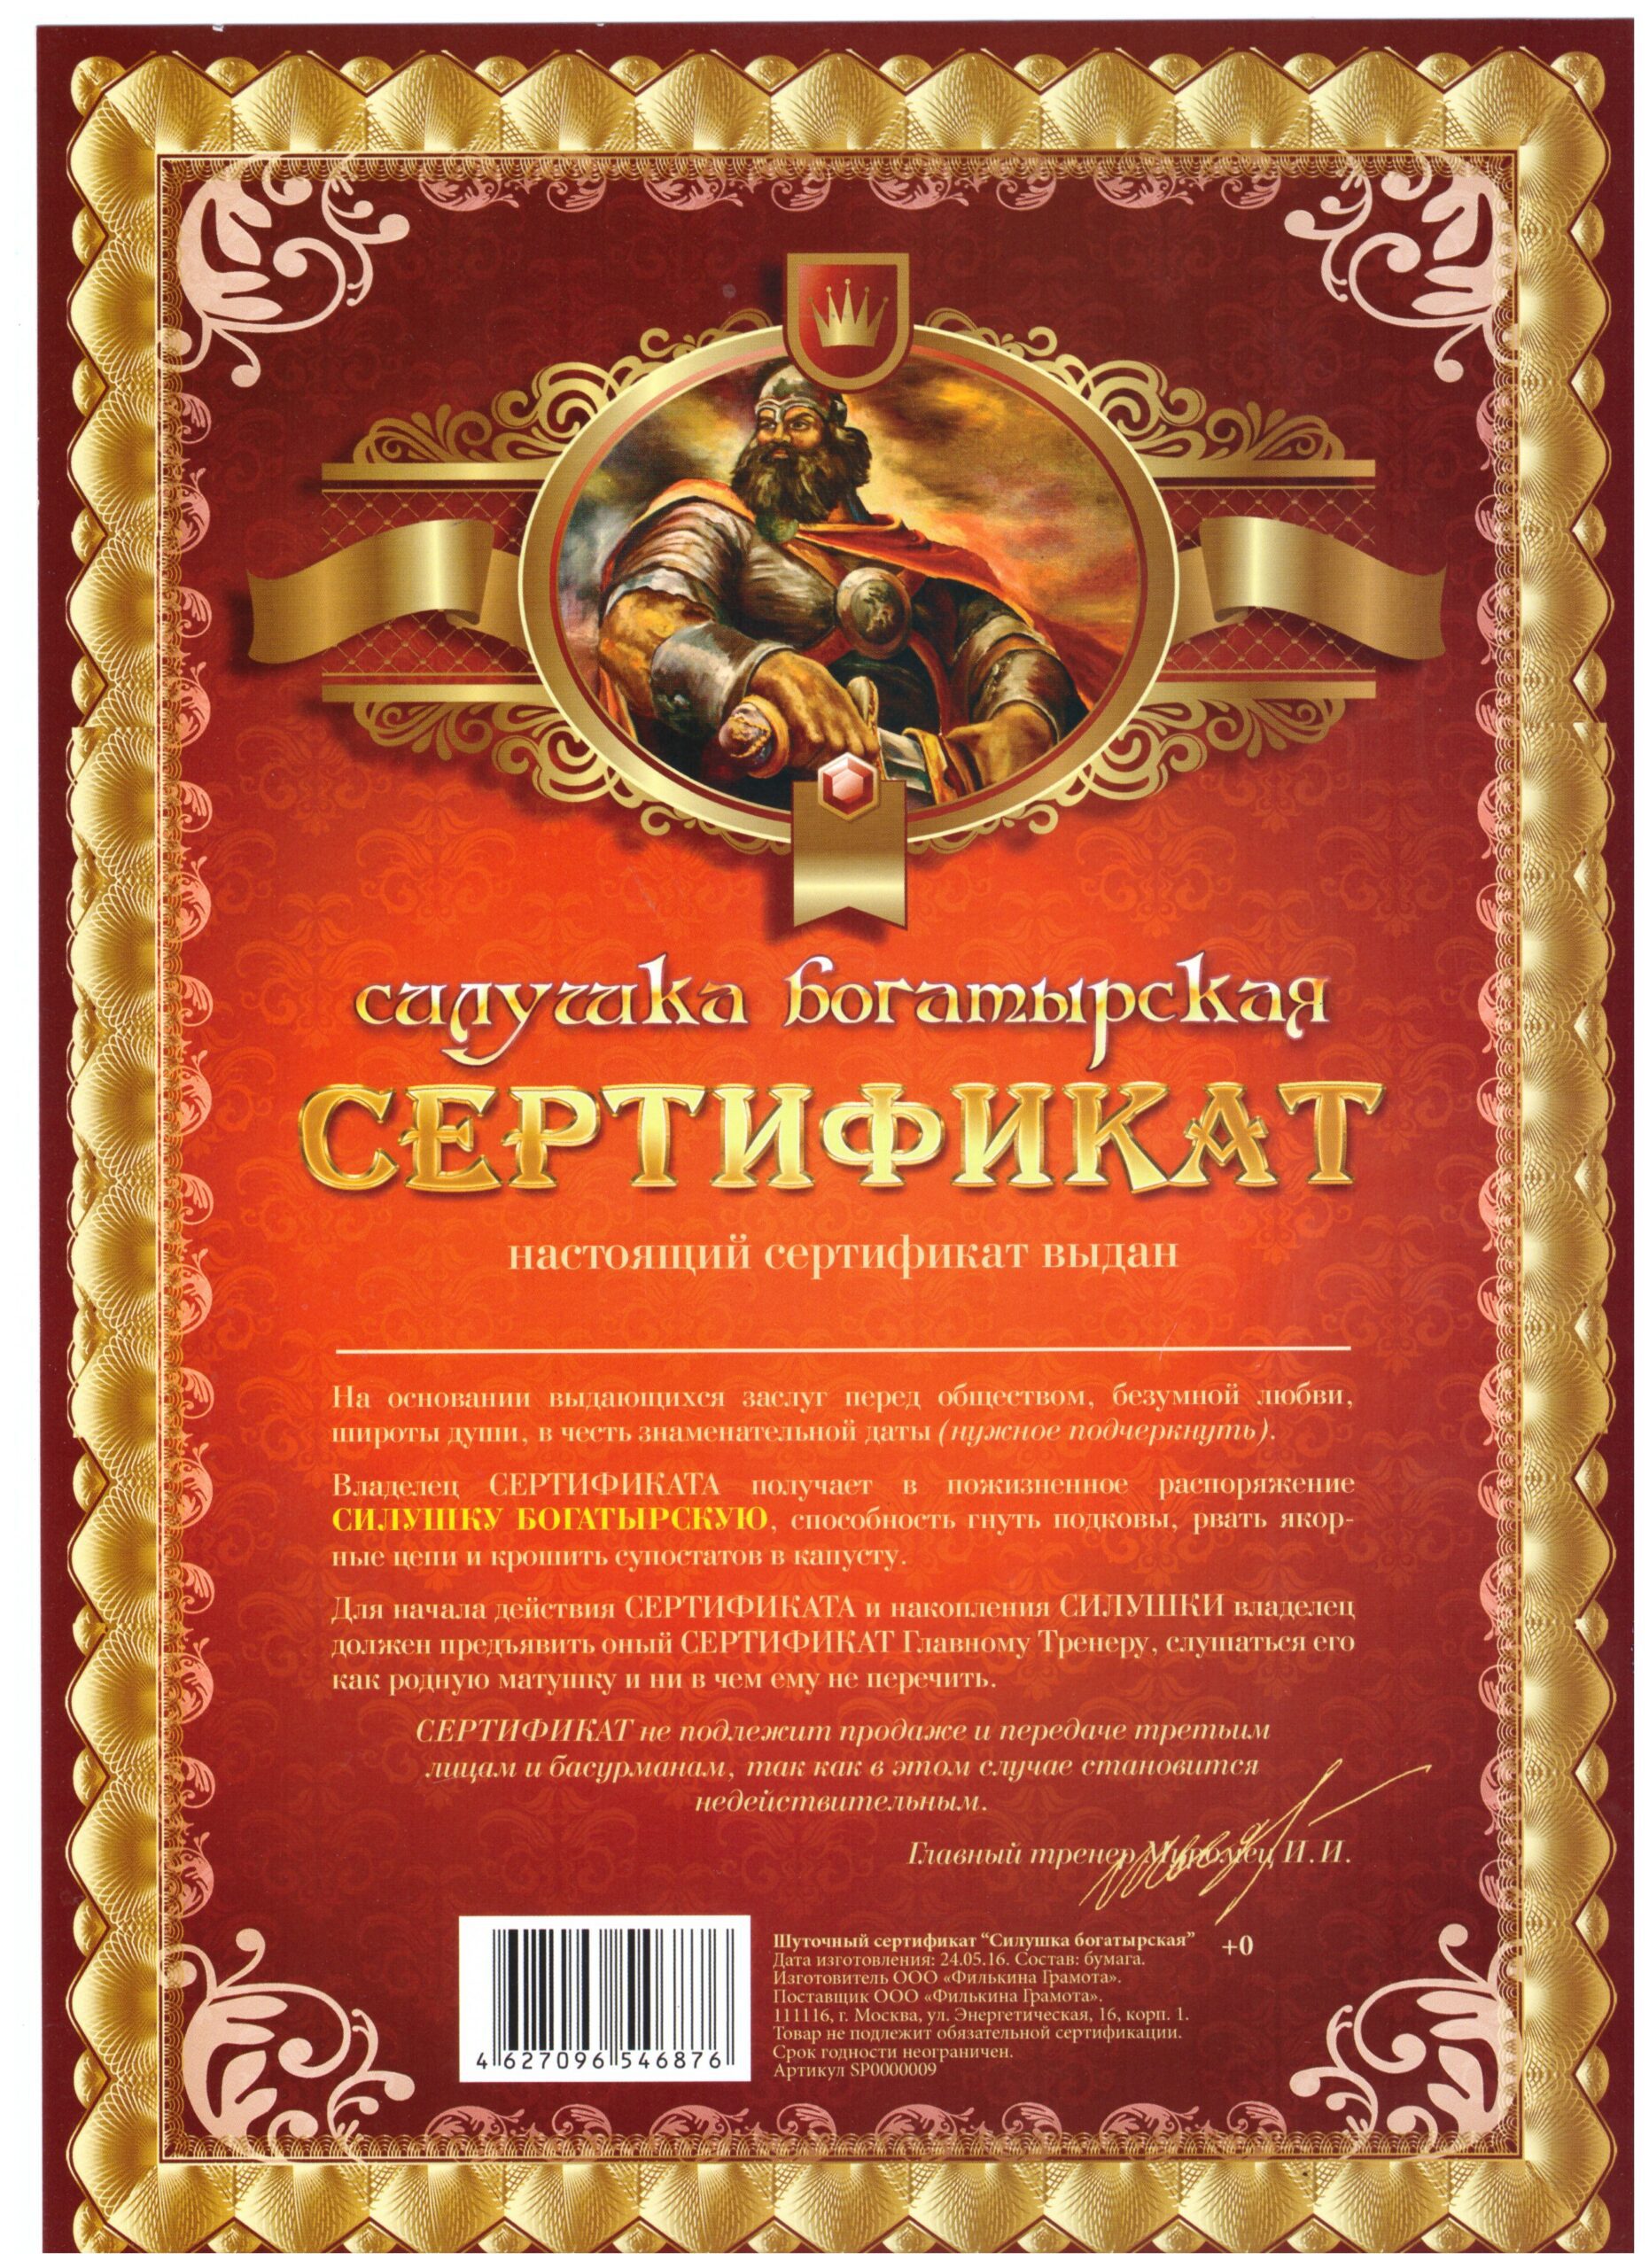 Сертификат на силушку богатырскую - без рамки А4